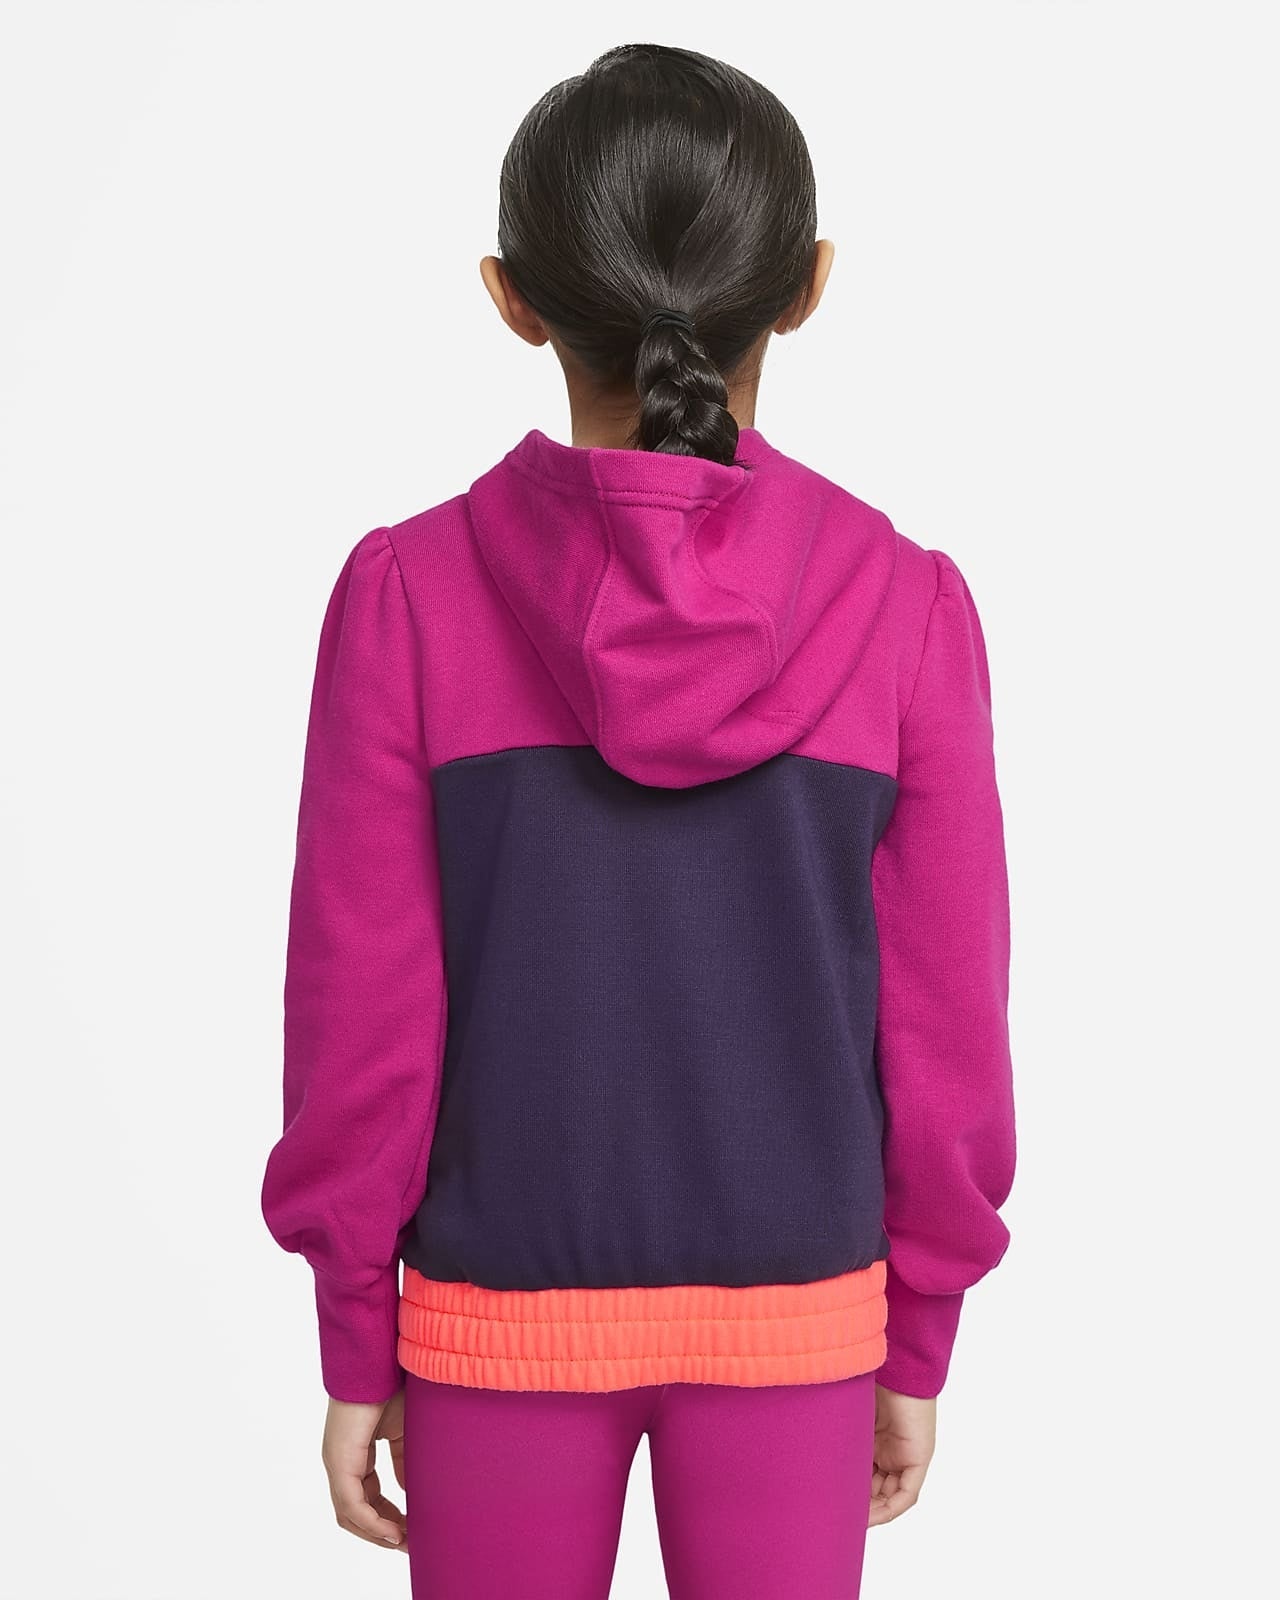 Nike Sportswear Mädchen-Kapuzenpullover – Fuchsia